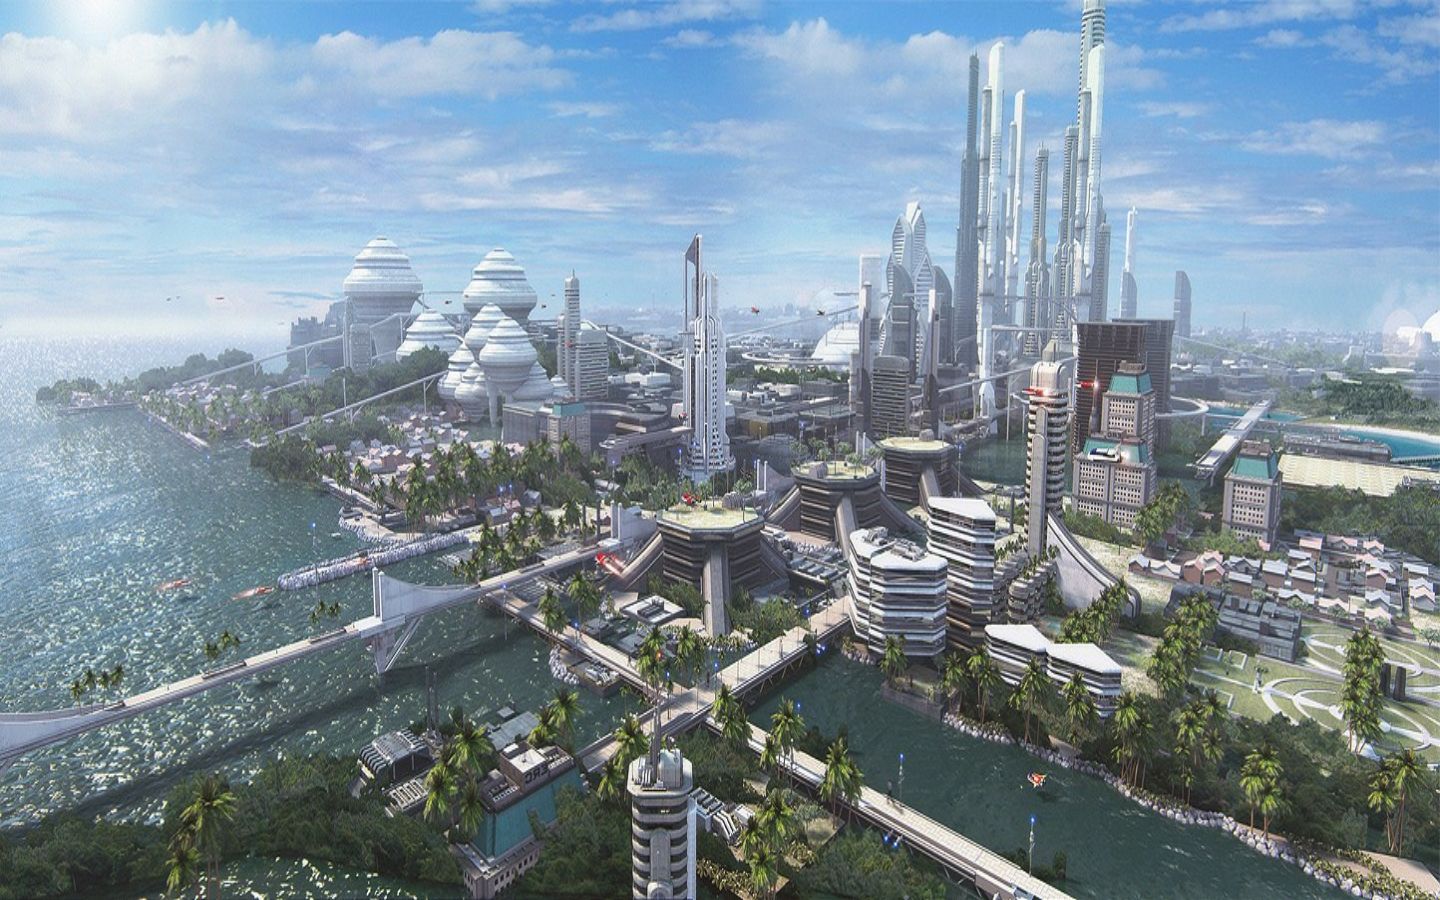 2017 что будет в мире. Дубай 2050 город будущего. Экуменополис. Экогород будущего концепт Левиафан. Экуменополис Sci-Fi.